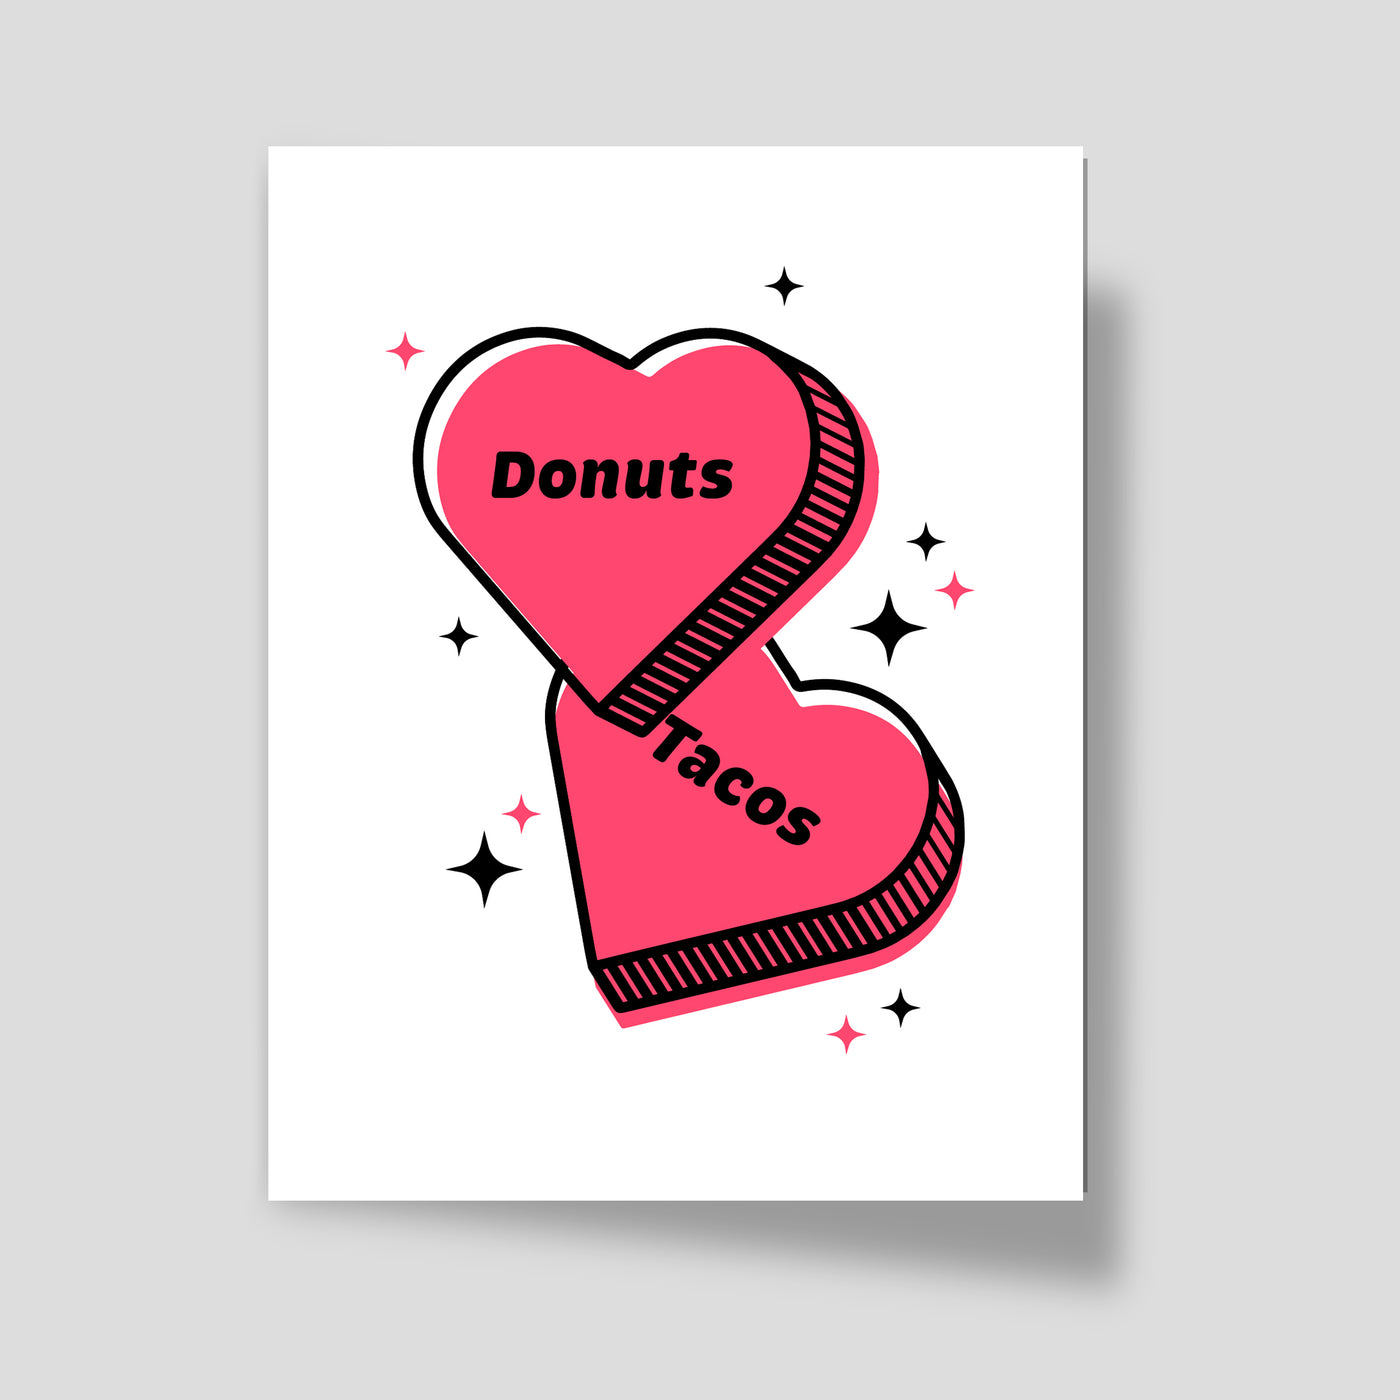 Donuts & Tacos Greeting Card